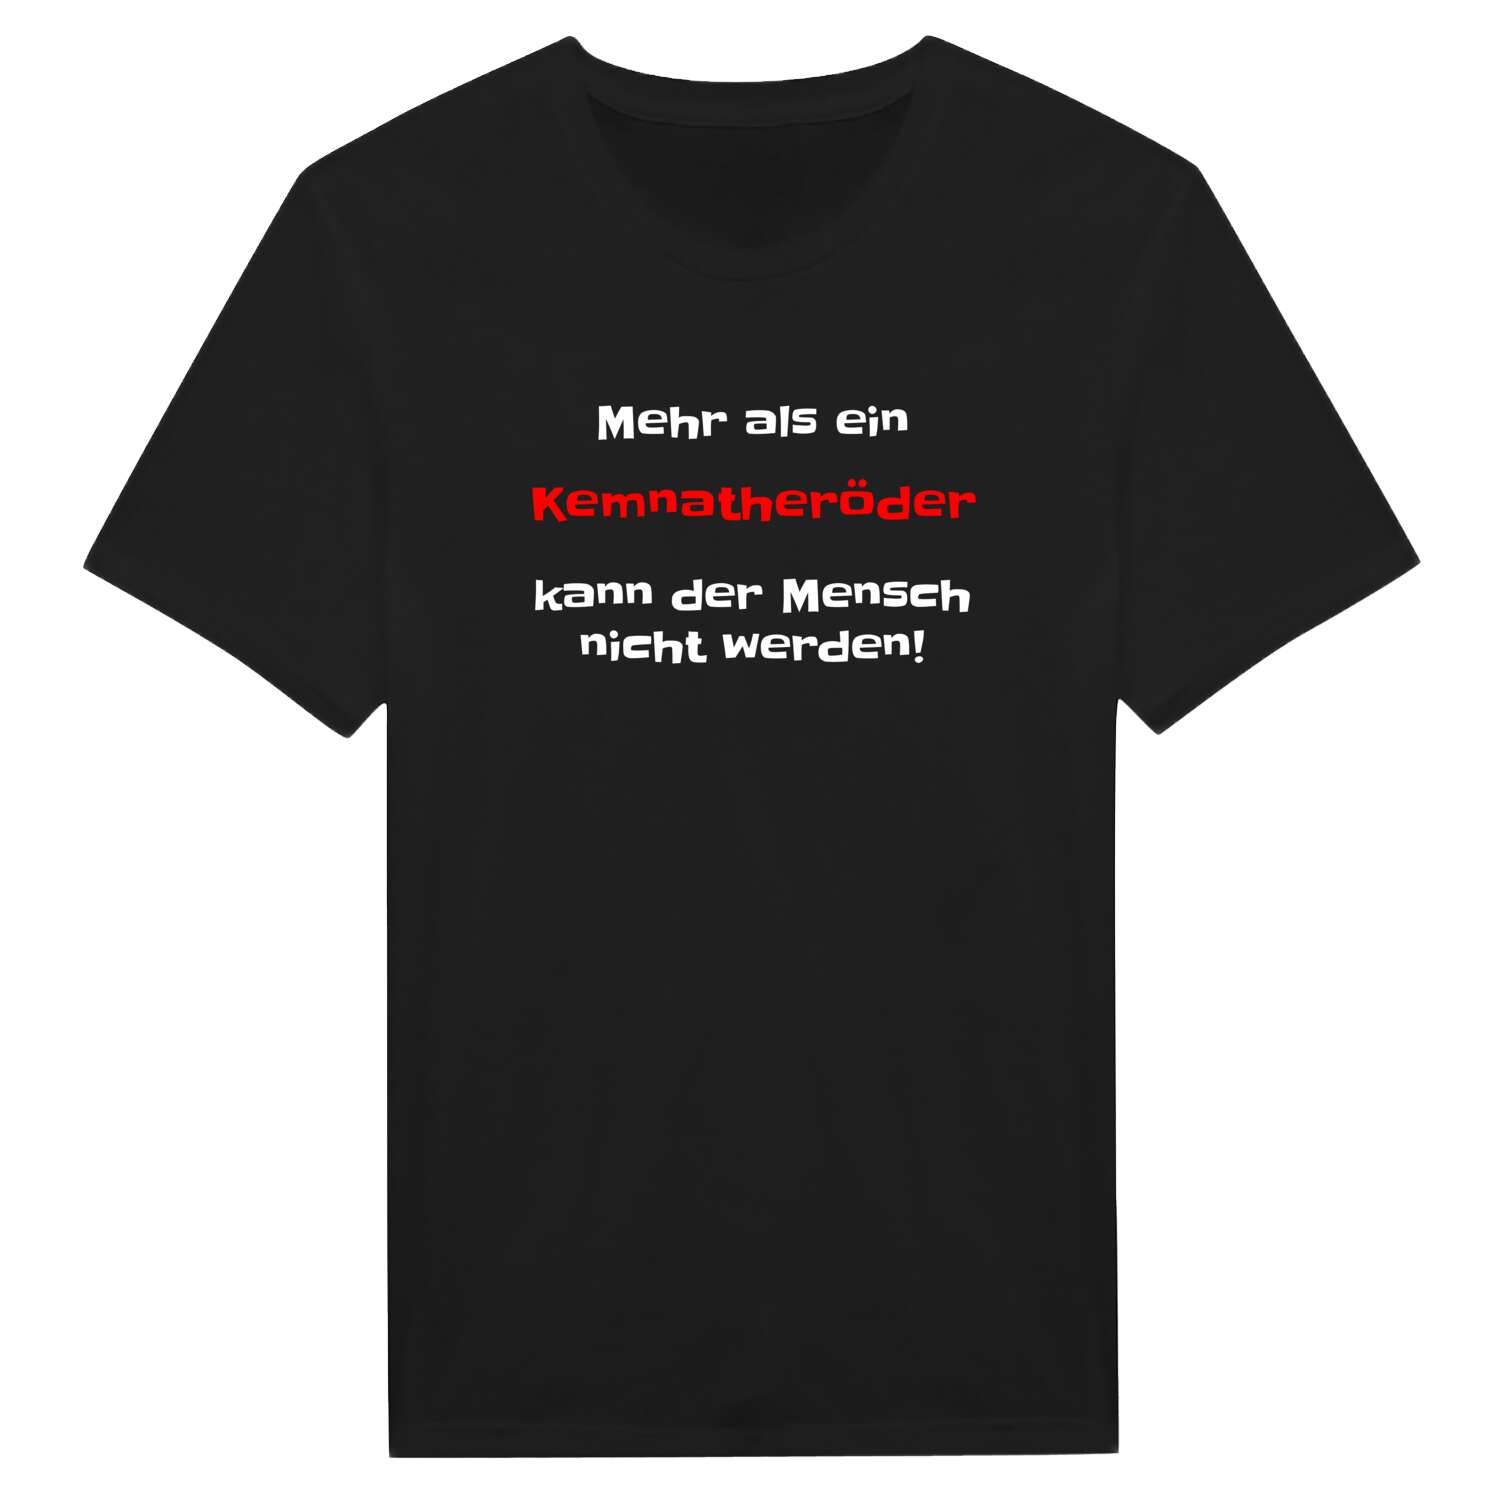 Kemnatheröd T-Shirt »Mehr als ein«